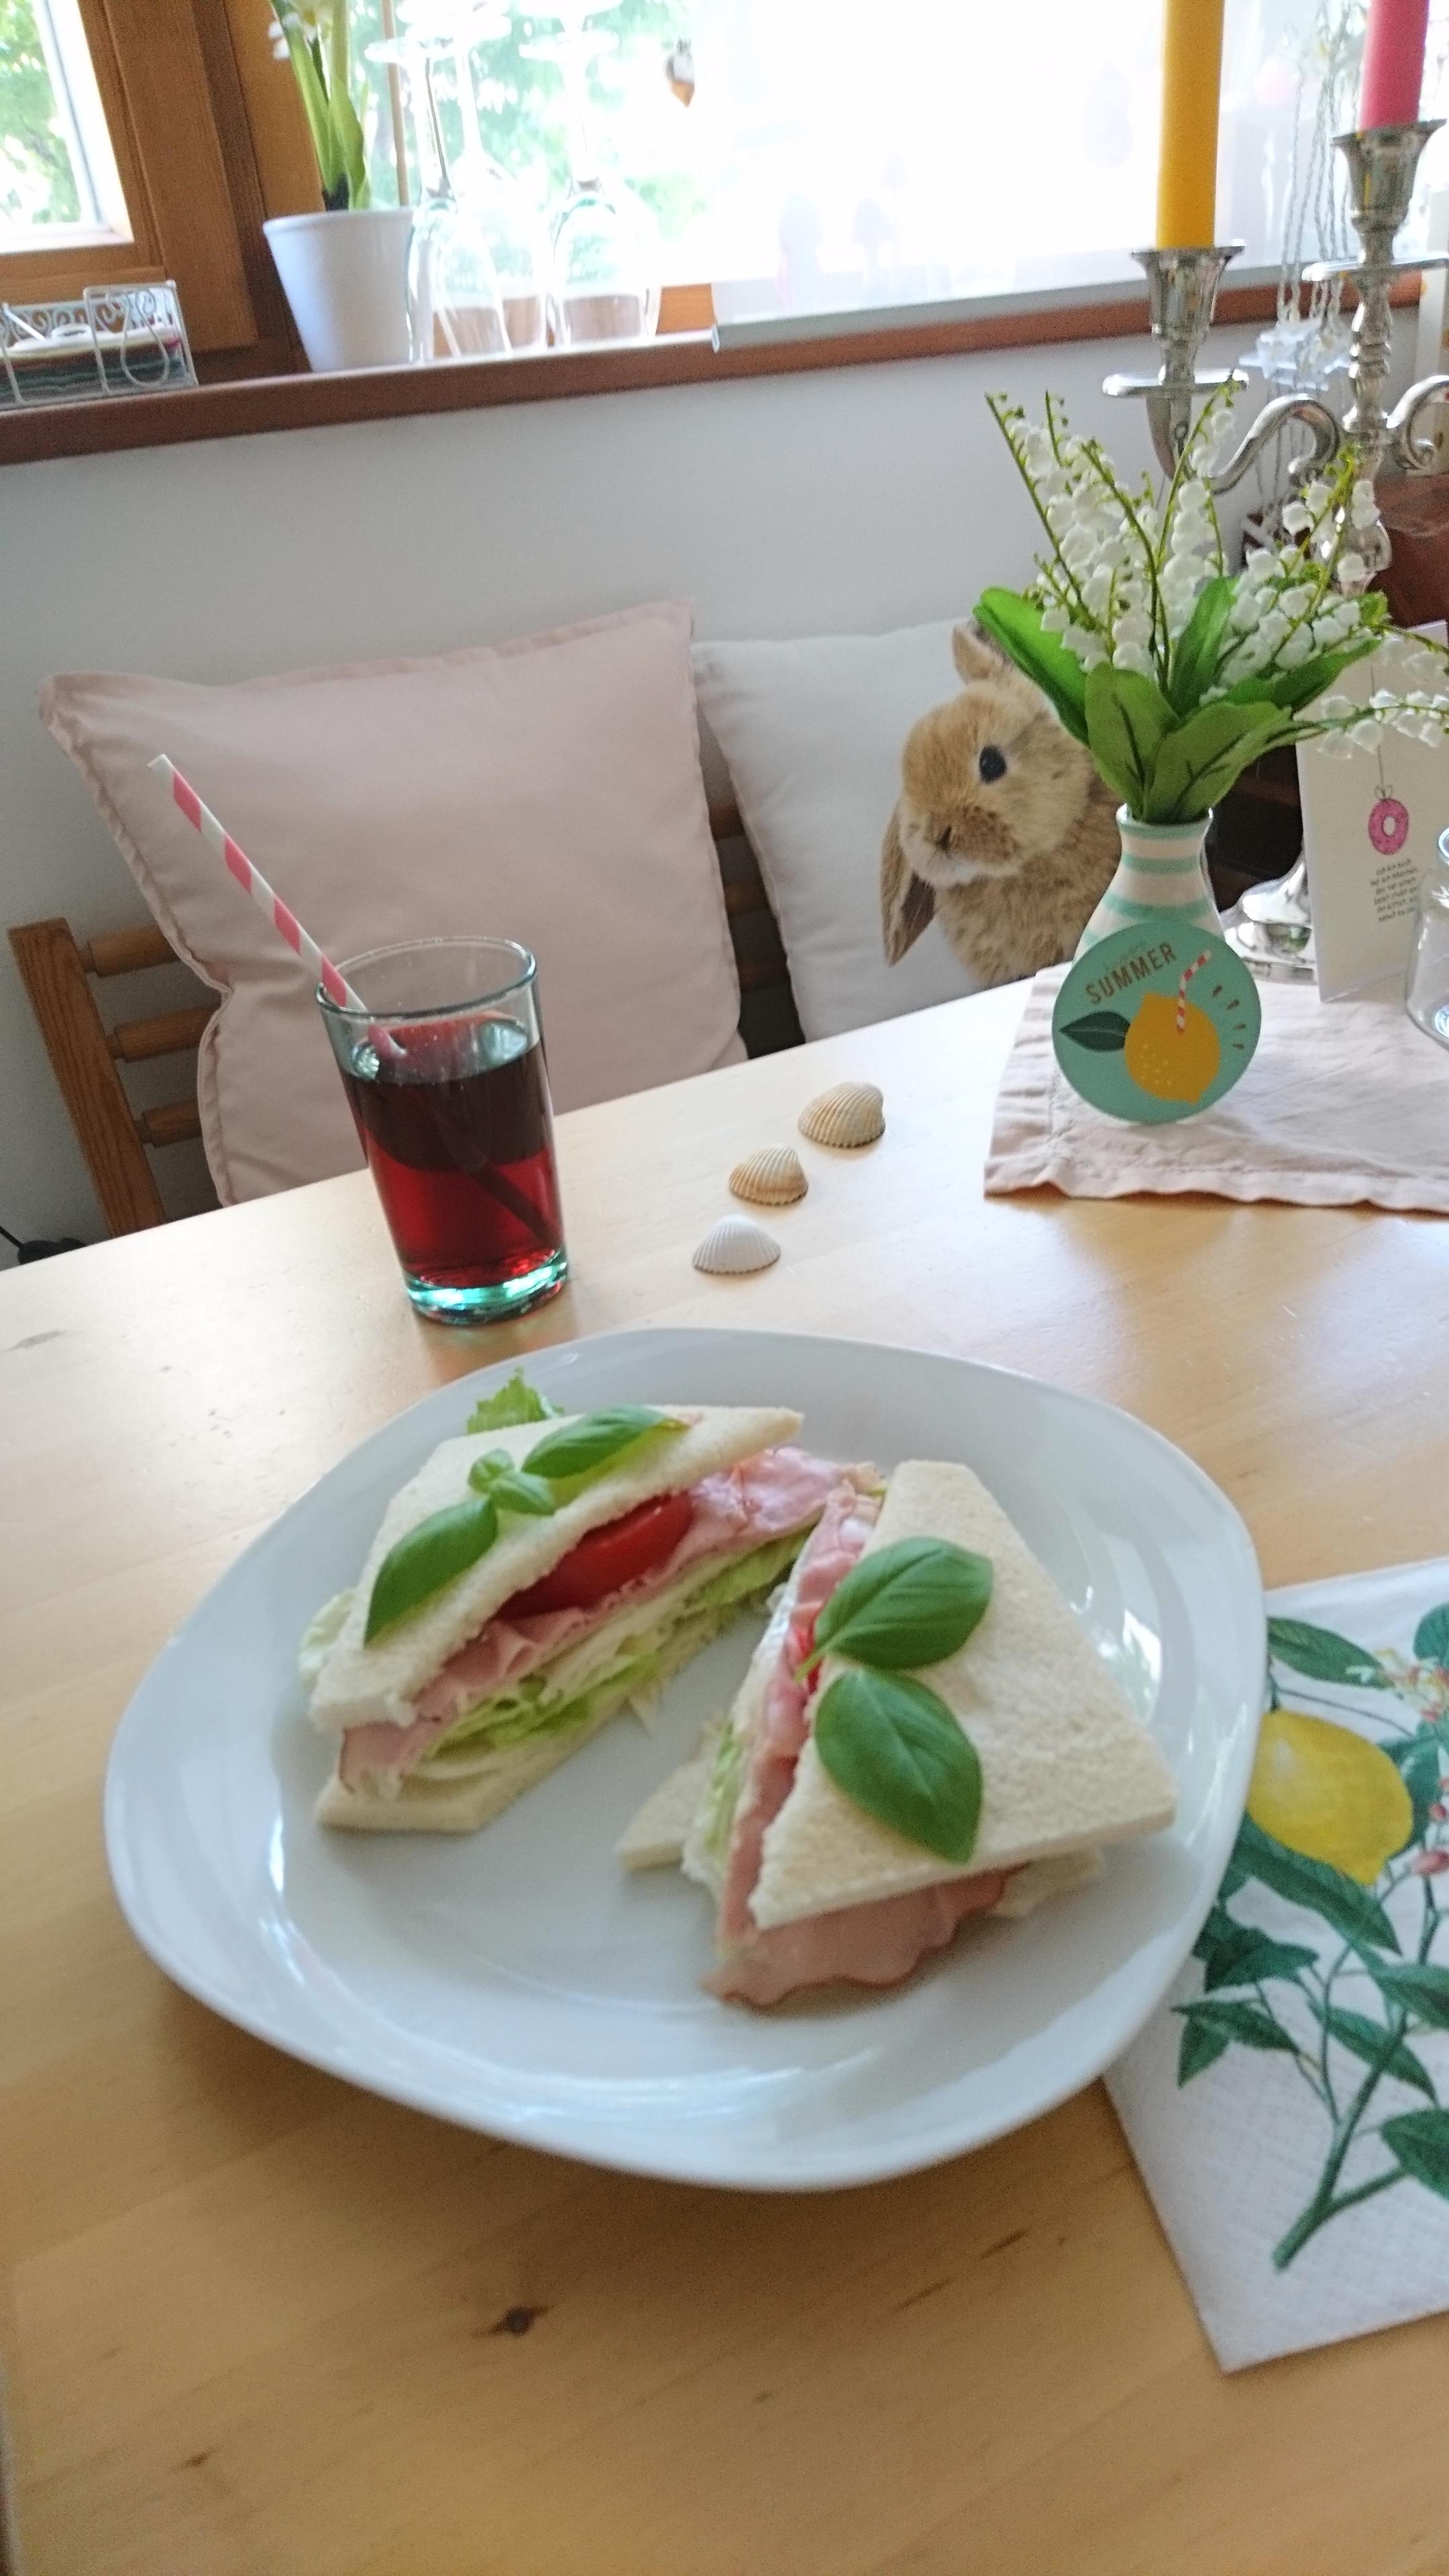 #summer #sandwich mit Johannisbeerschorle und einem Spritzer Zitrone. 
Sooo erfrischend 😋 💦🍋